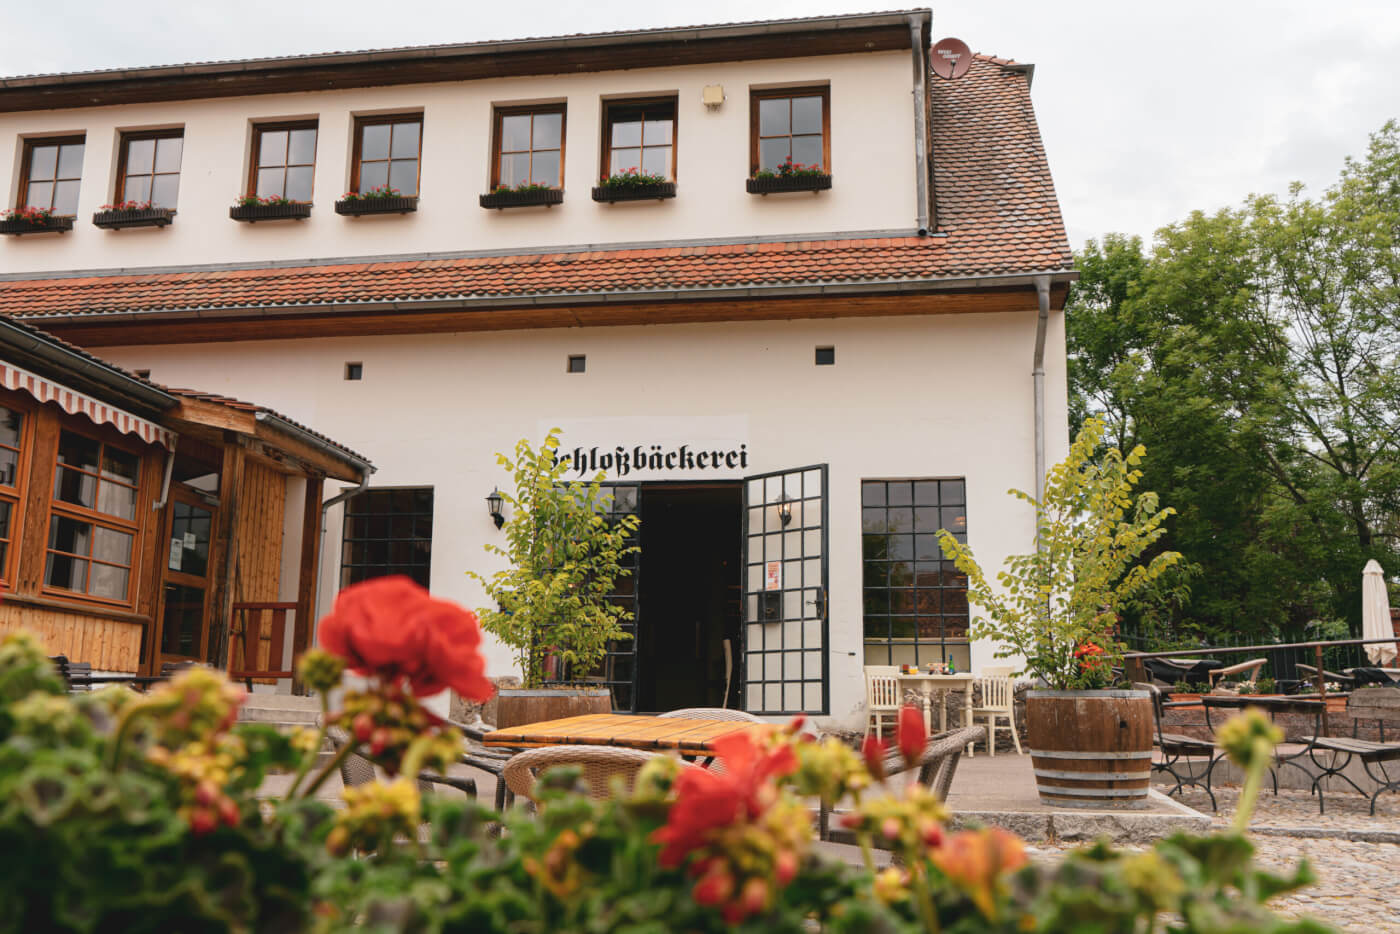 Pressemitteilung: Neueröffnung des Café Schlossbäckerei Diedersdorf